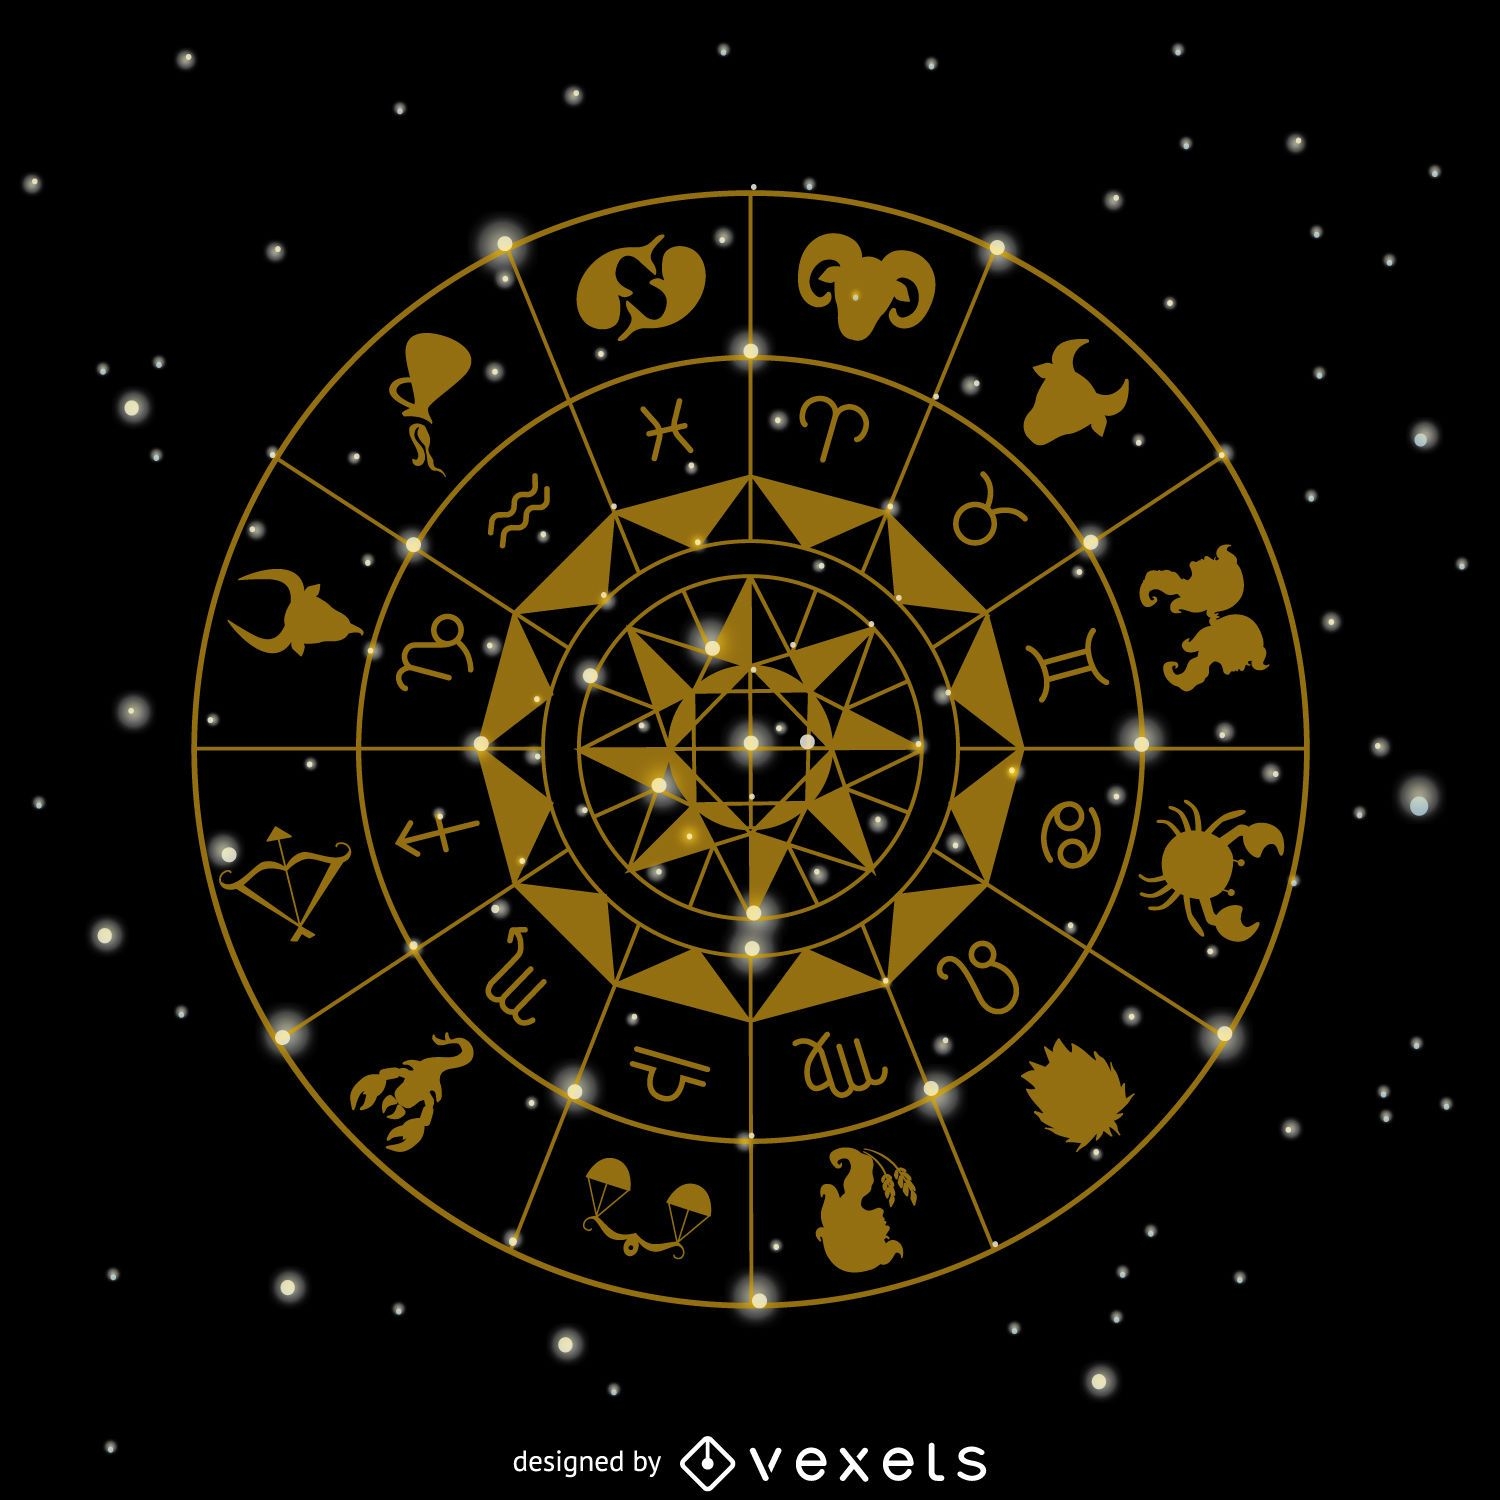 Desenho dos signos do zodíaco